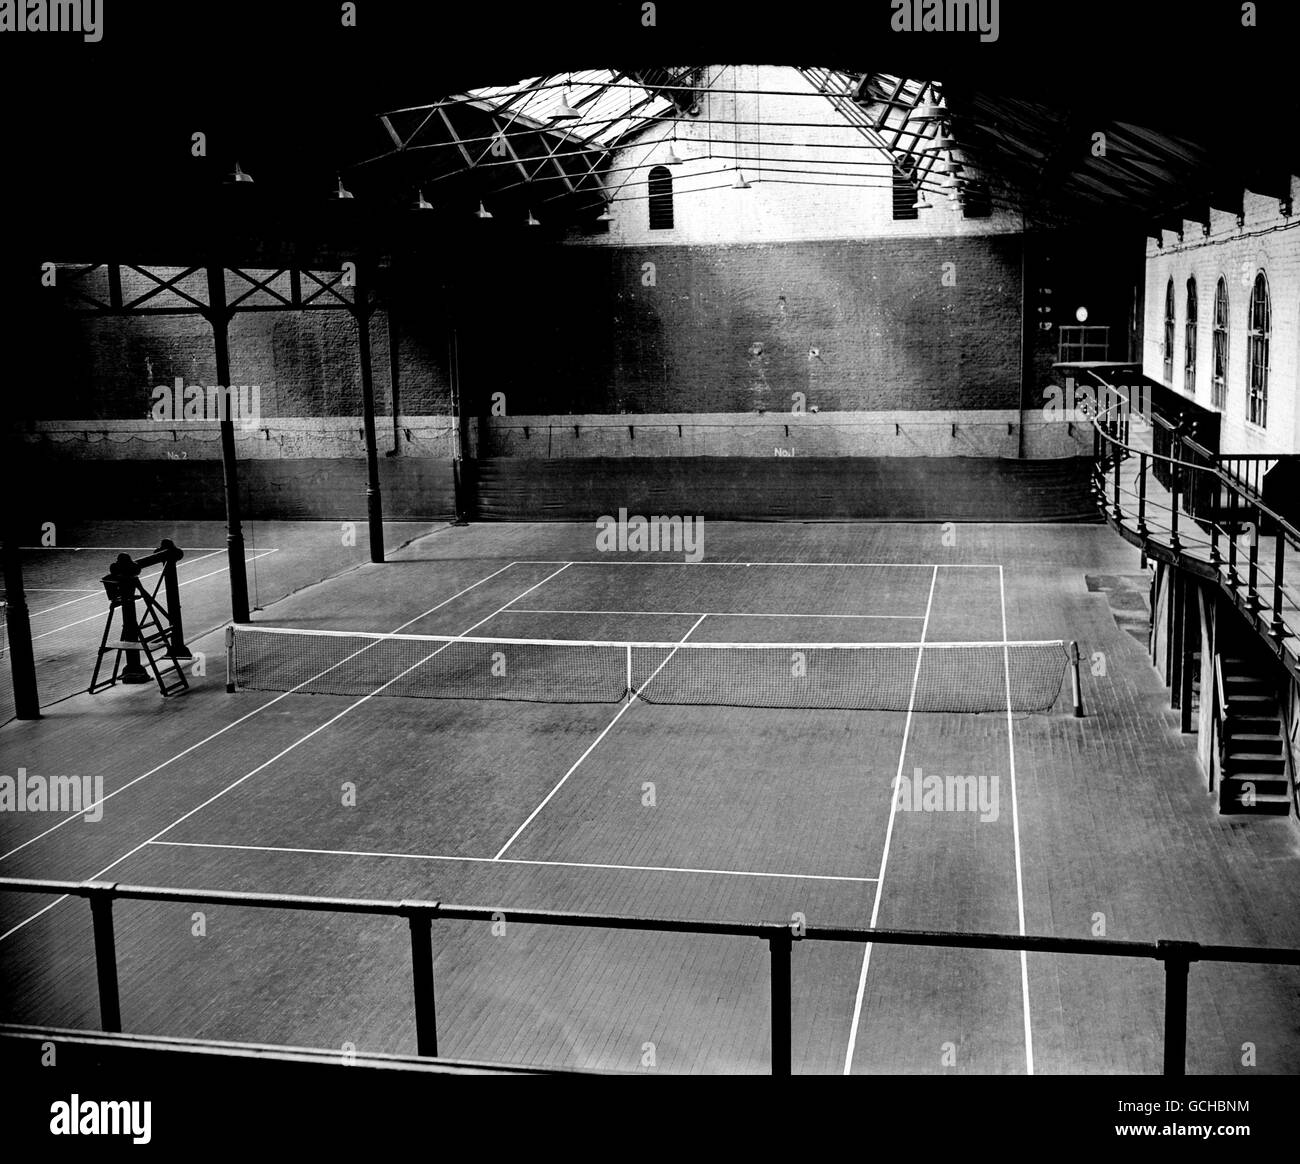 Tennis - The 'Queen' Series - Queen's Club. Gesamtansicht des überdachten Tennisplatzes Stockfoto